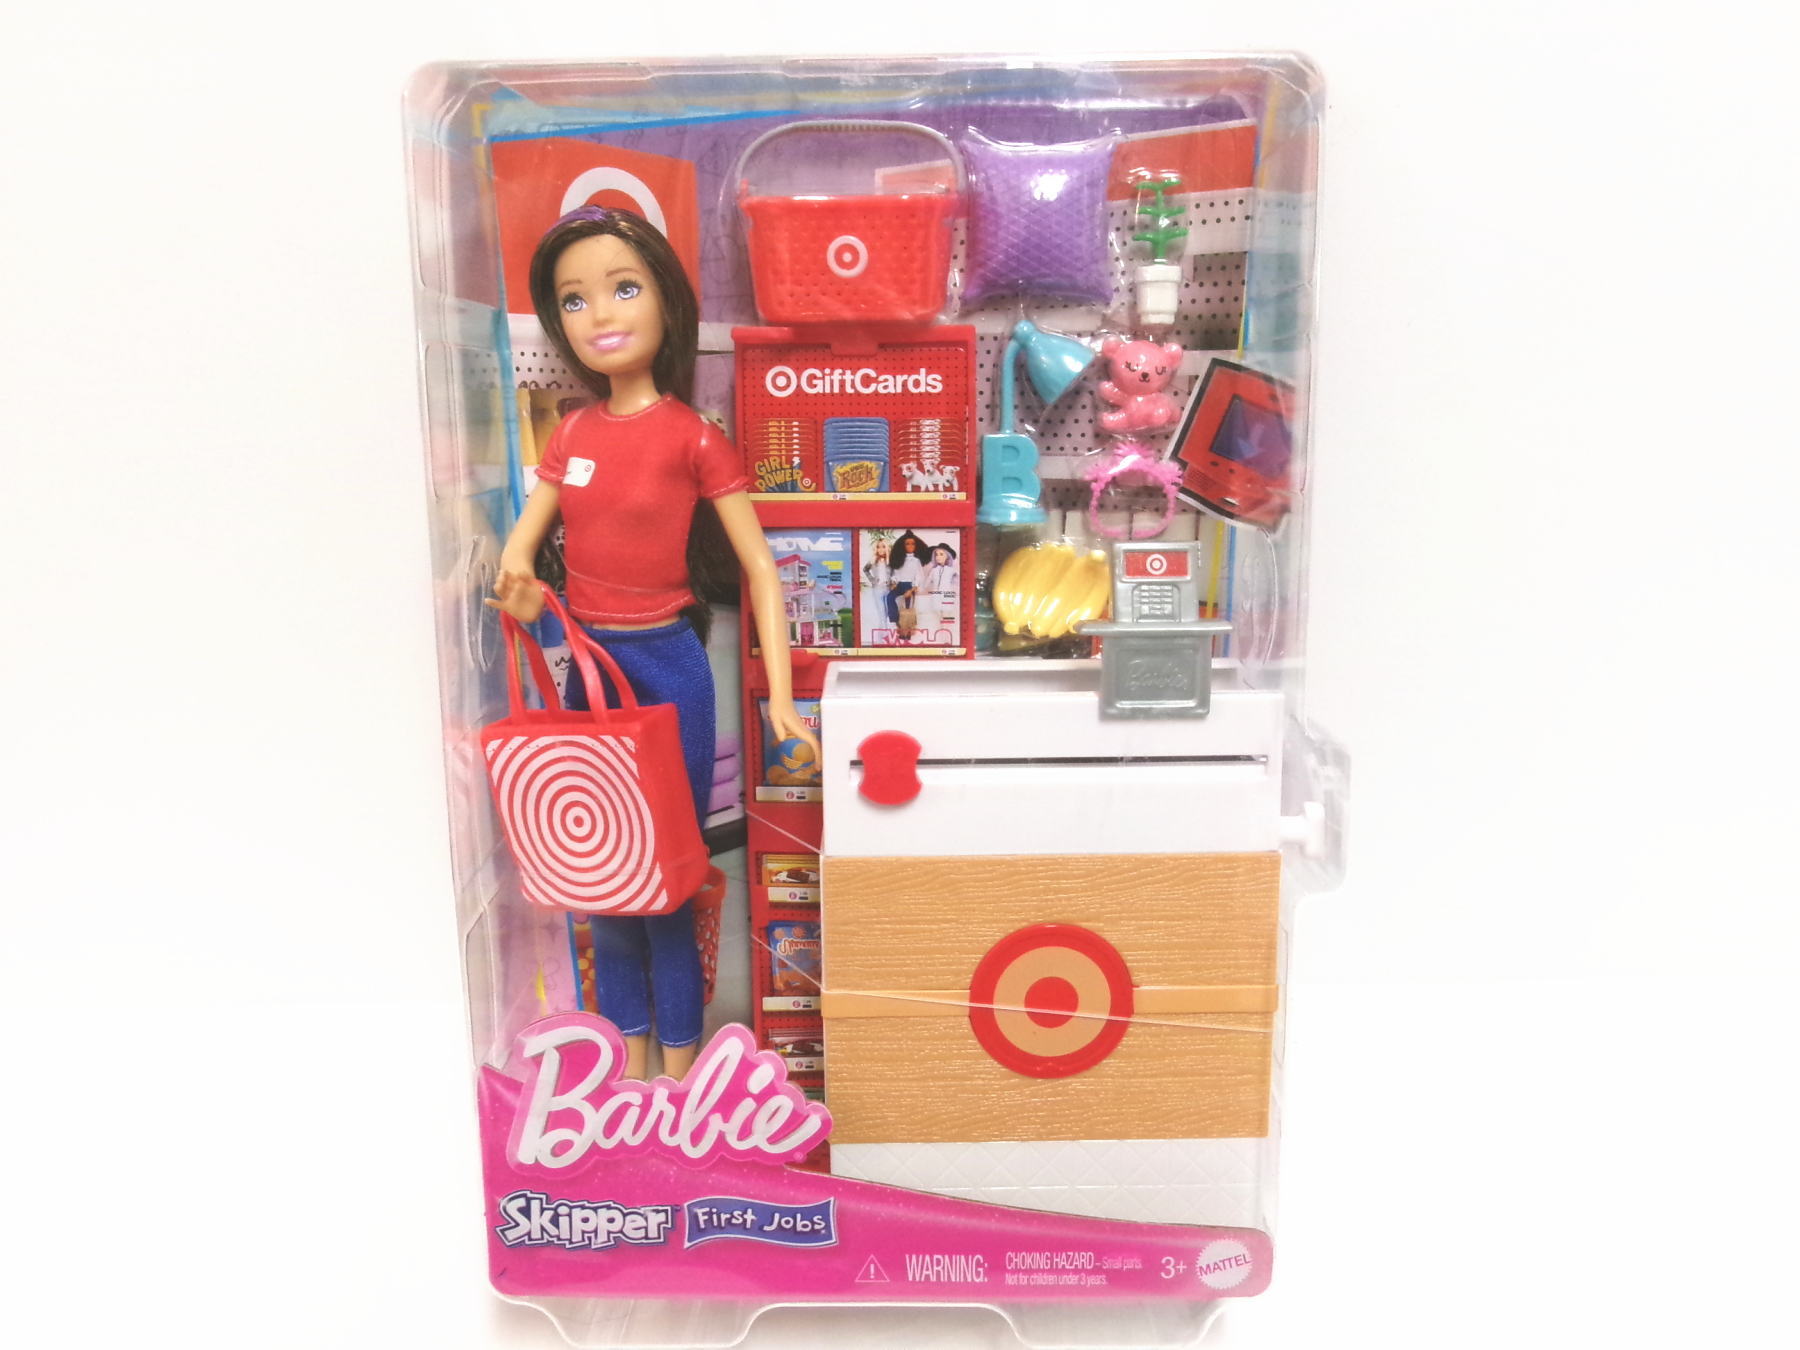 バービー スキッパー ターゲット ストア 初仕事 ドール Barbie Skipper 